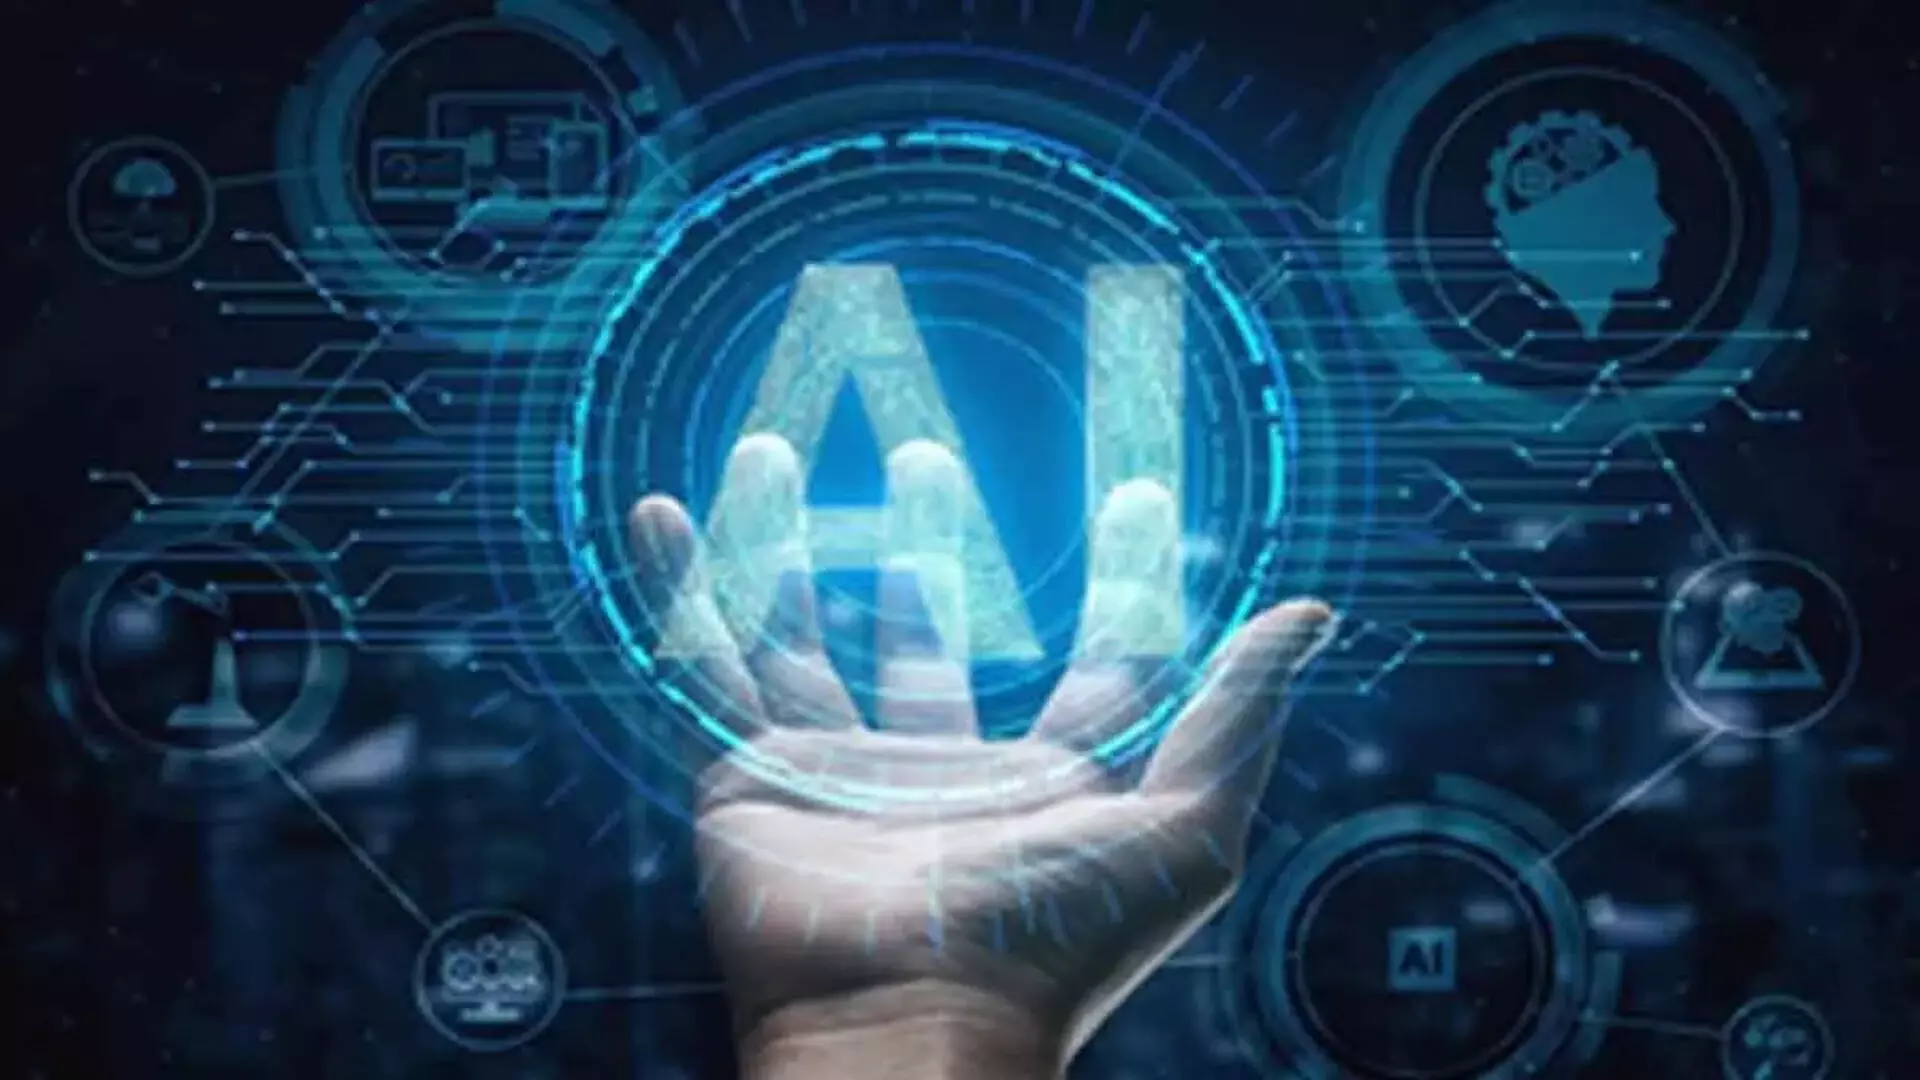 दक्षिण कोरियाई राष्ट्रपति ने AI प्रौद्योगिकी में शीर्ष 3 देशों में शामिल होने का संकल्प लिया